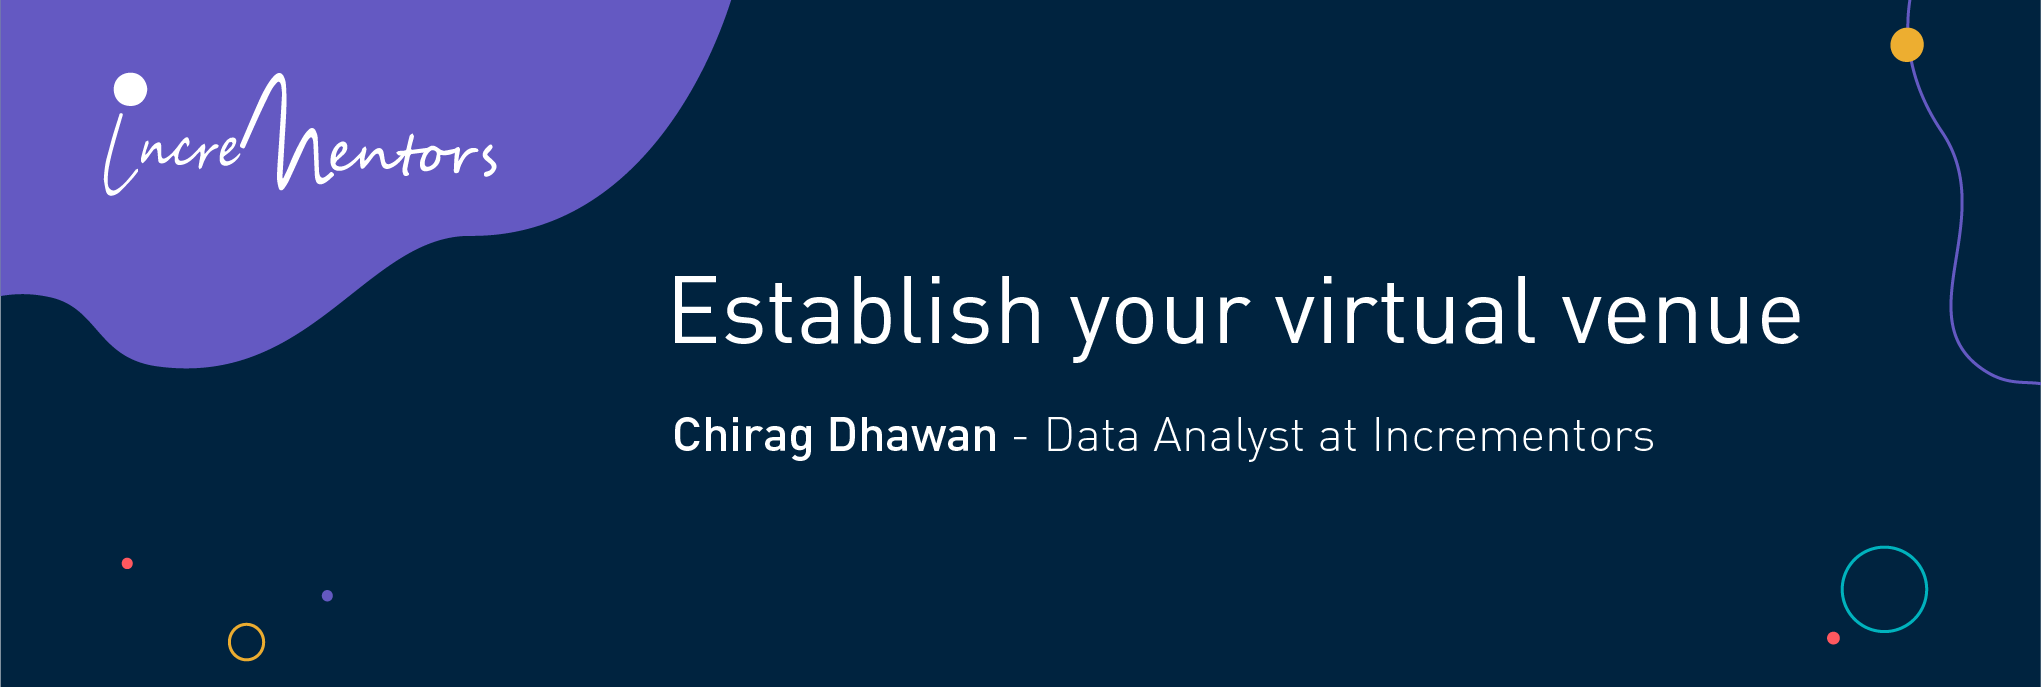  Establish your virtual venue Chirag Dhawan - Data Analyst at Incrementors